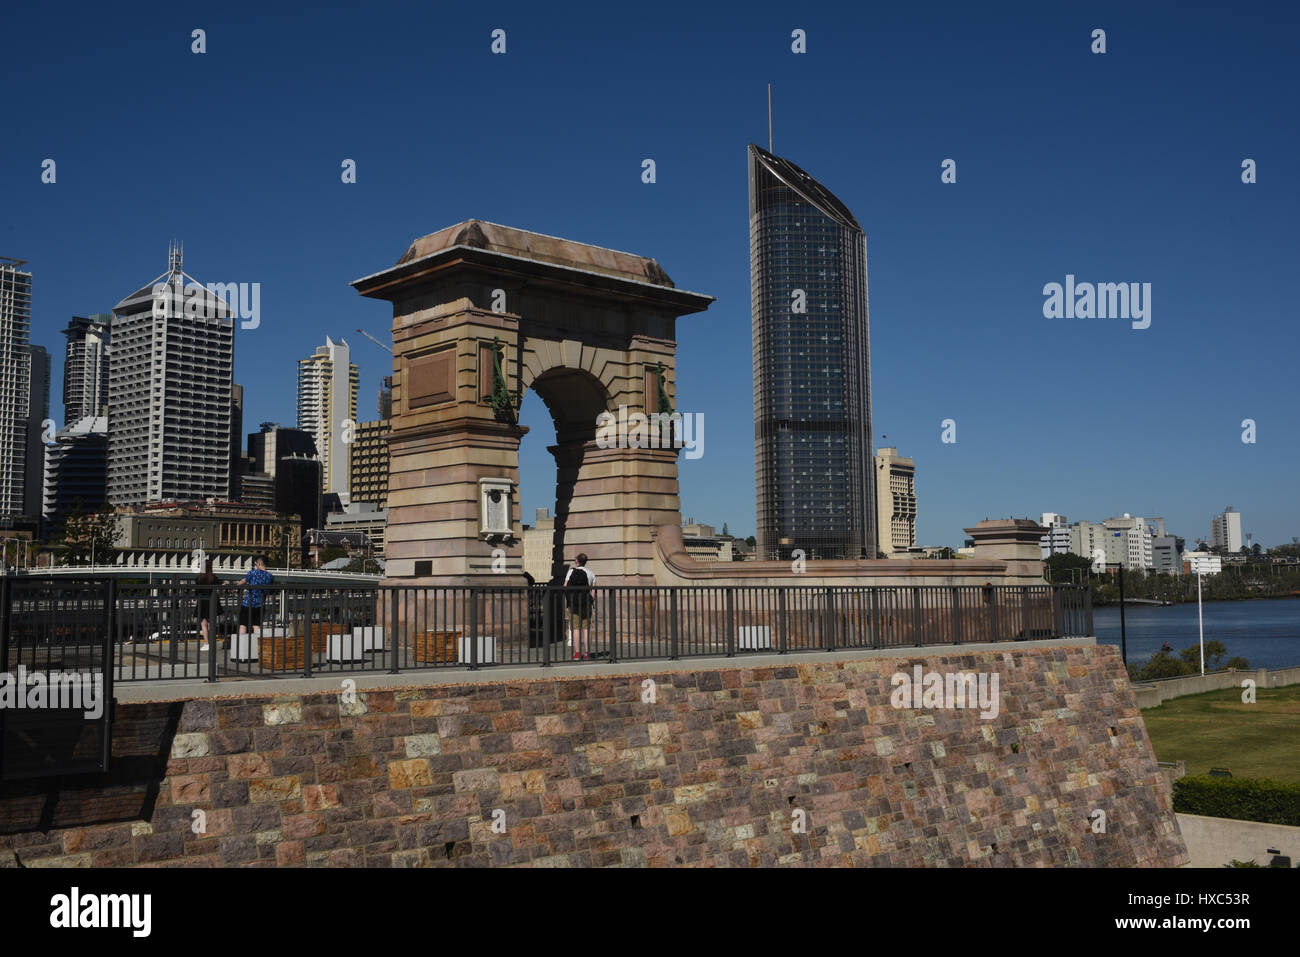 Brisbane, Australien: Widerlager Torbogen von der ehemaligen Victoria-Brücke, die auf diesem Aufstellungsort, mit 1 William Street Turm im Hintergrund stand Stockfoto